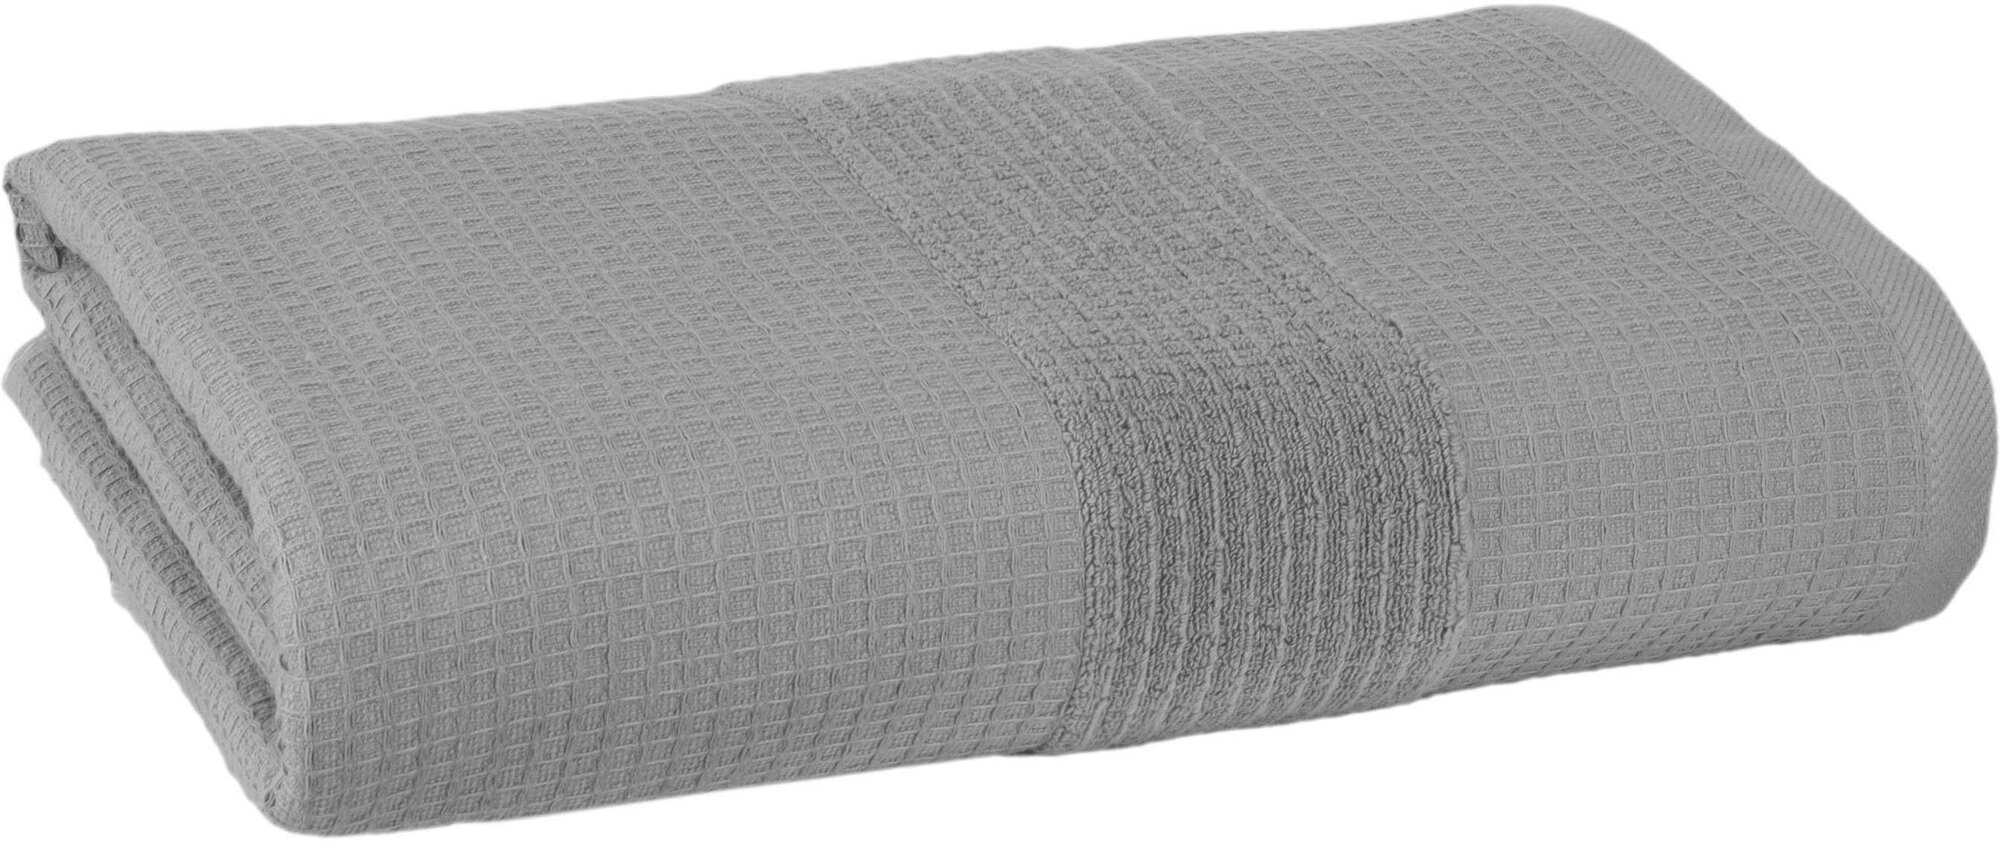 Полотенце Linens Waffle  плотность ткани 500 г/м²